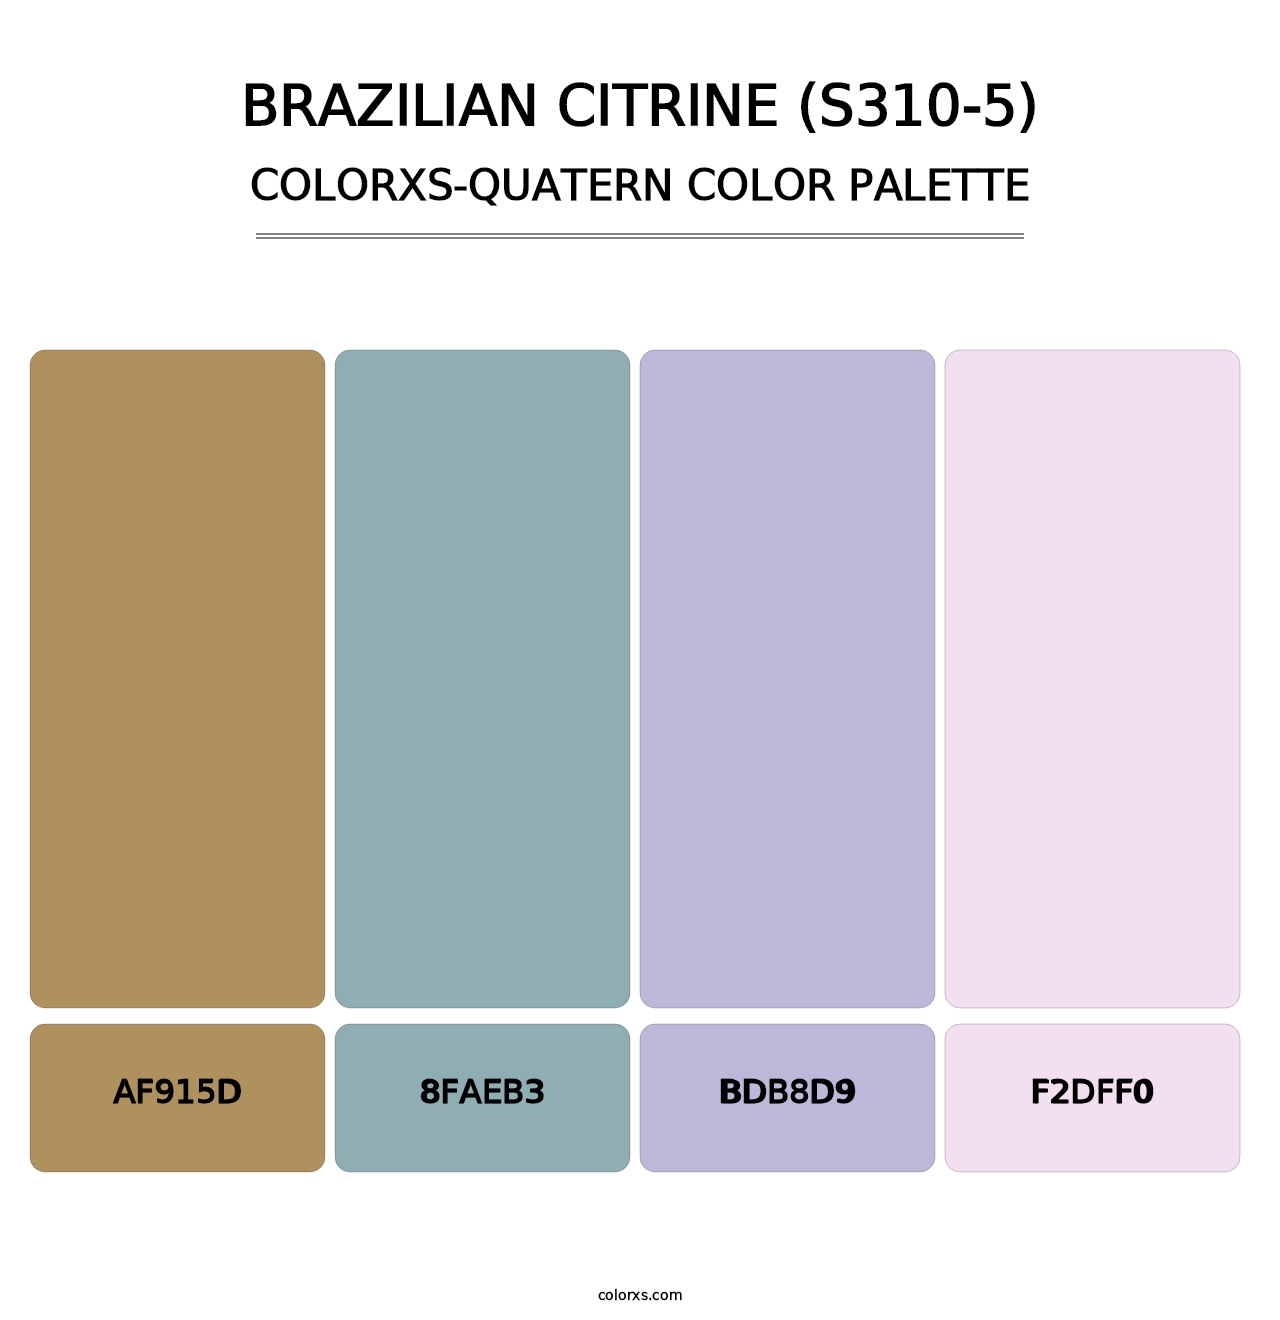 Brazilian Citrine (S310-5) - Colorxs Quatern Palette